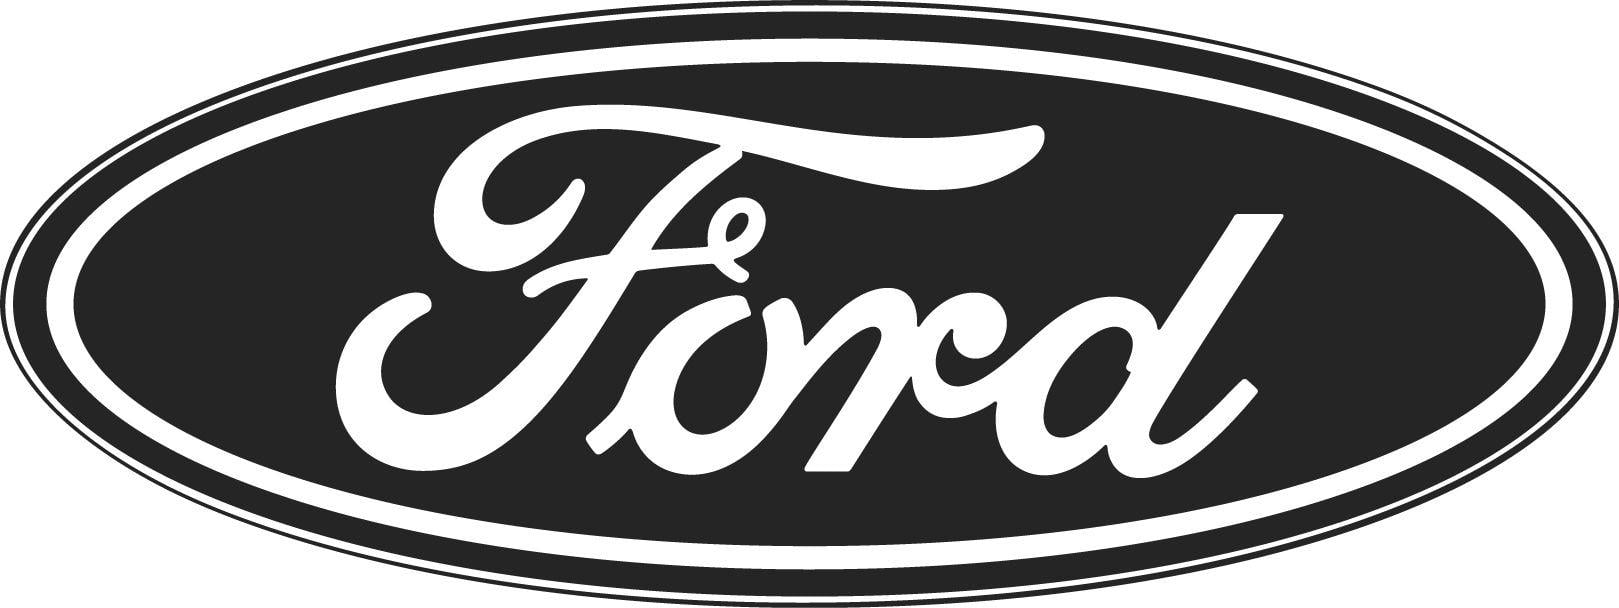 Black and White Ford Logo - Ford Trucks in Valencia, CA. Valencia Auto Center